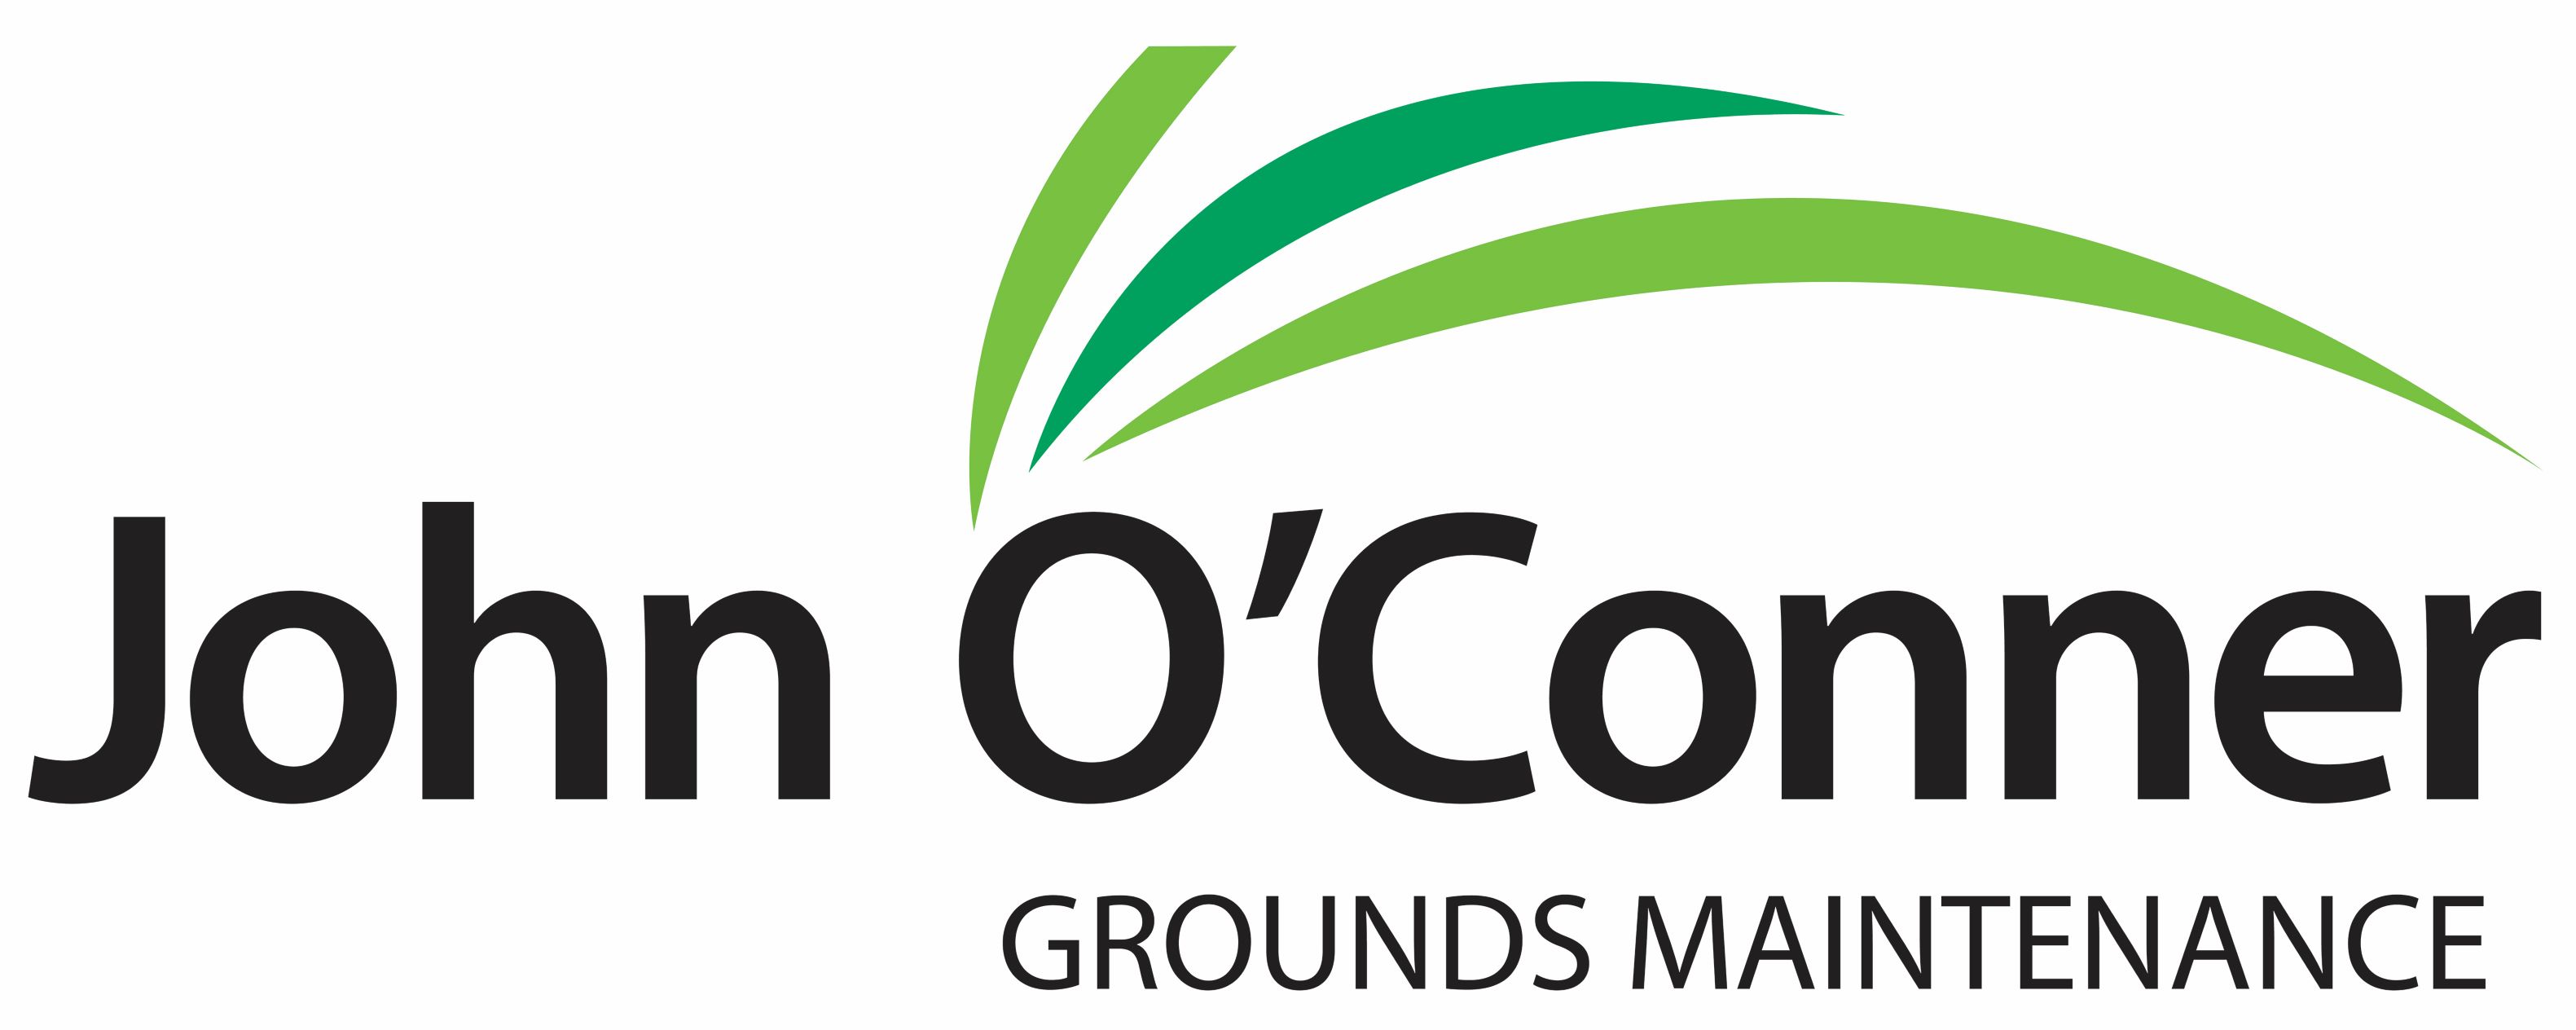 John Oconner logo